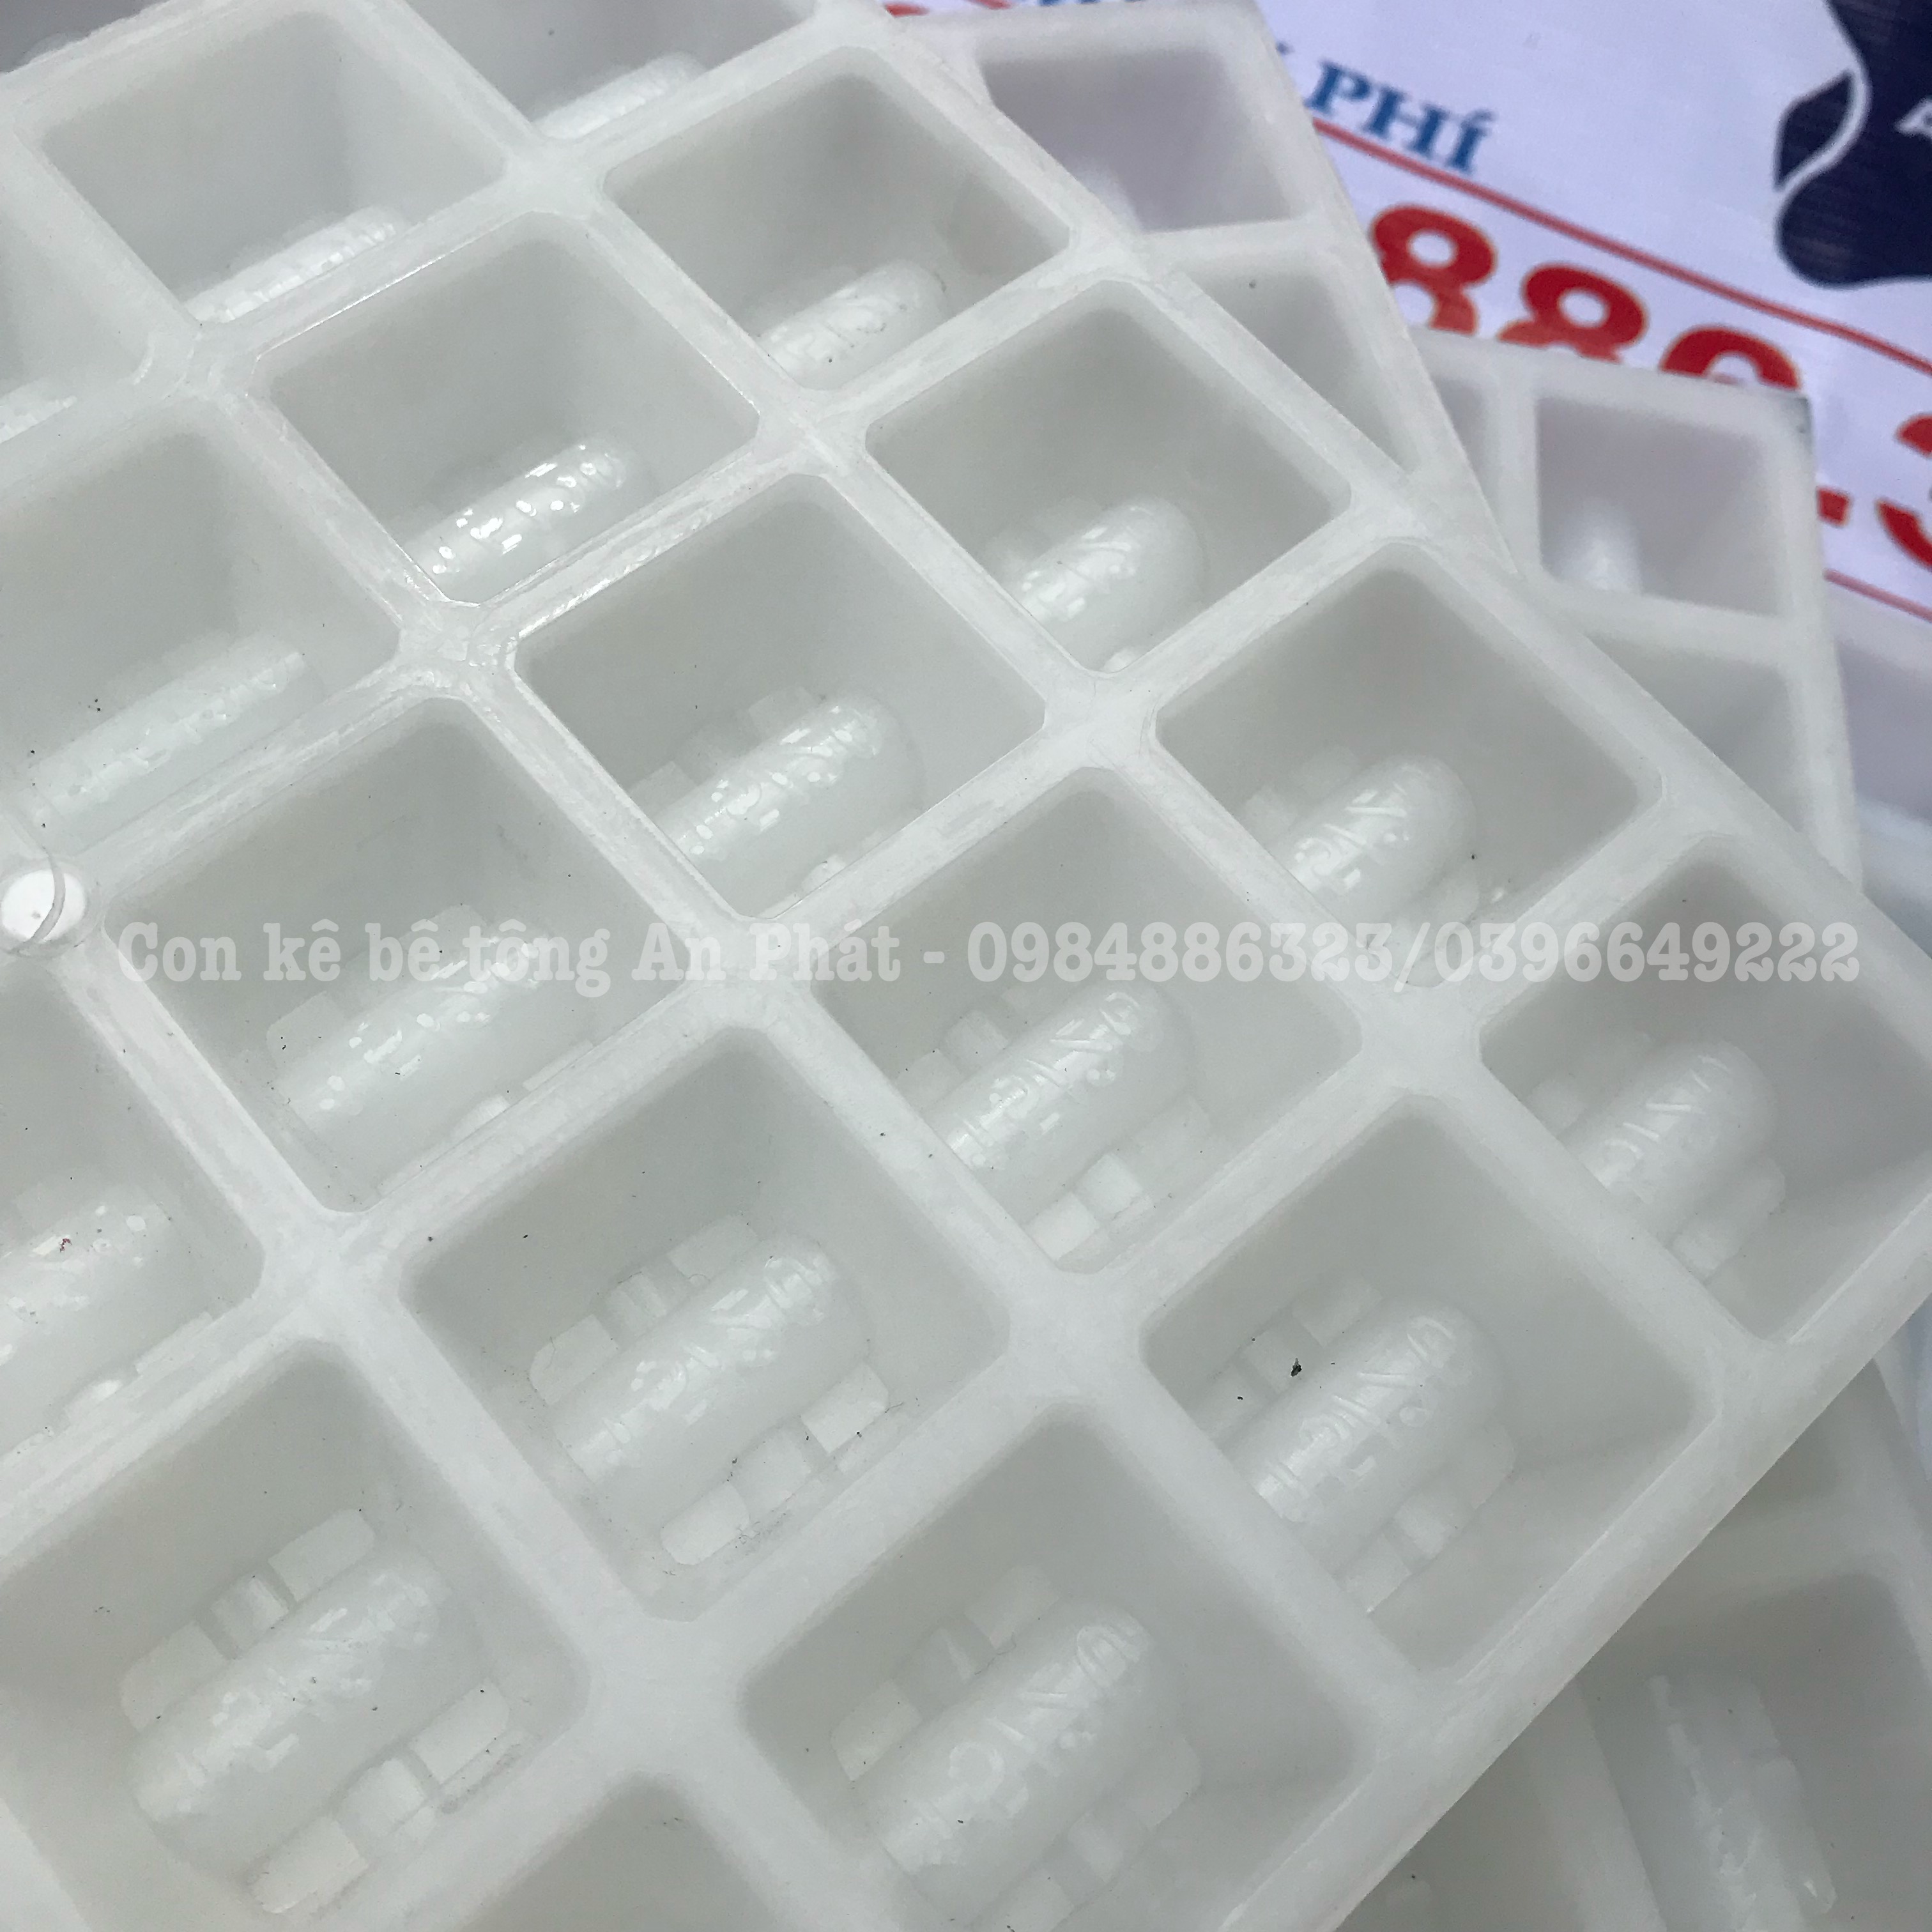 Khuôn nhựa đúc con kê bê tông V1(15/20mm) dùng cho thép sàn lớp dưới siêu bền chất lượng